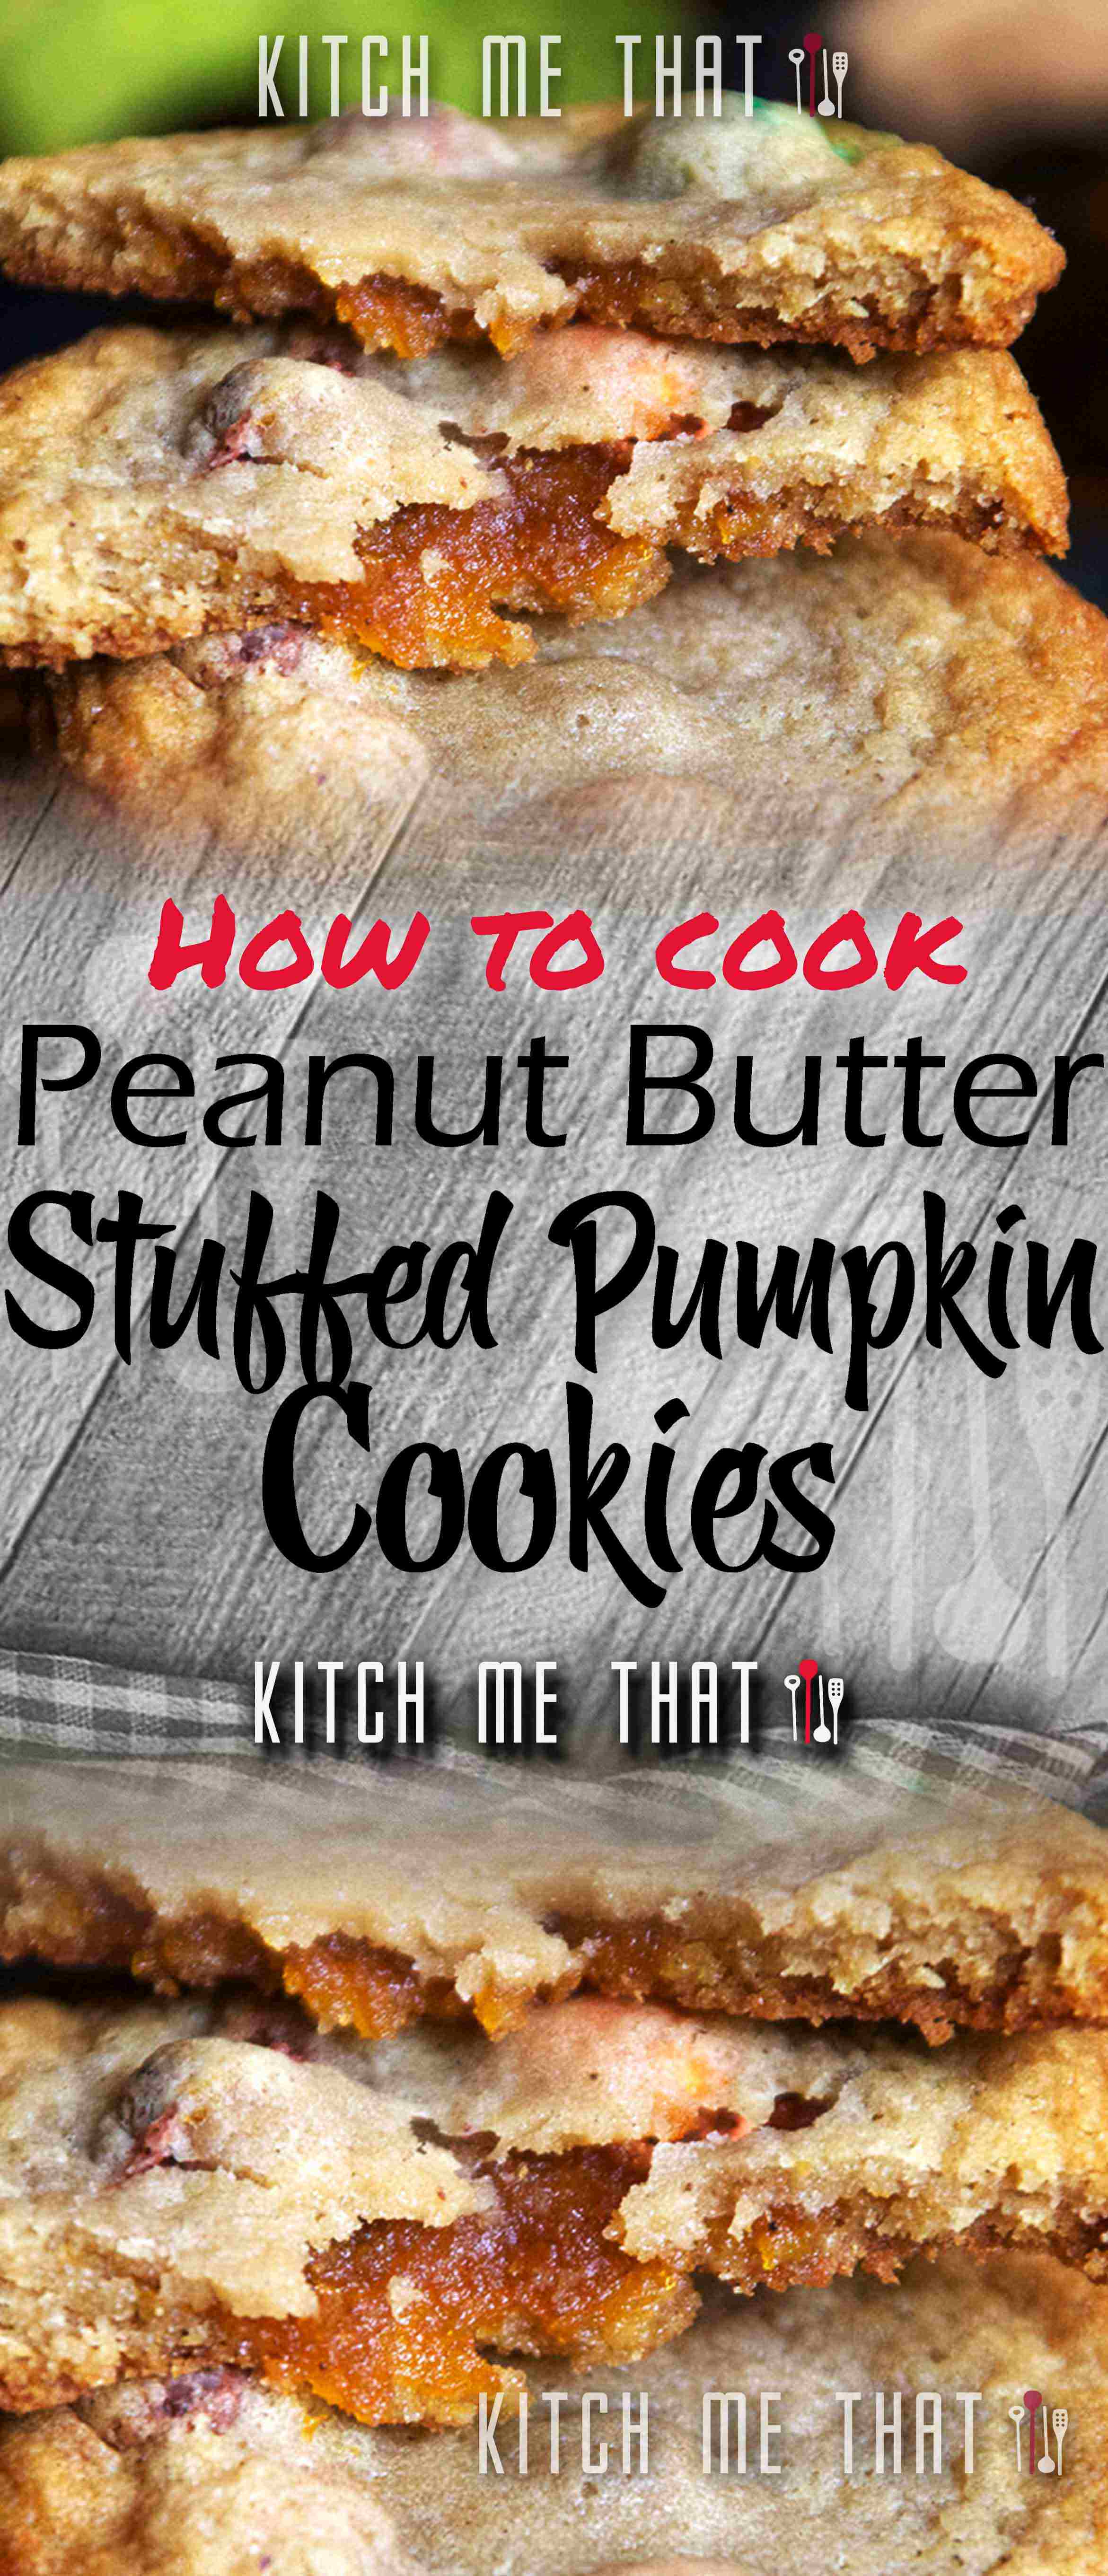 Peanut Butter Stuffed Pumpkin Cookies